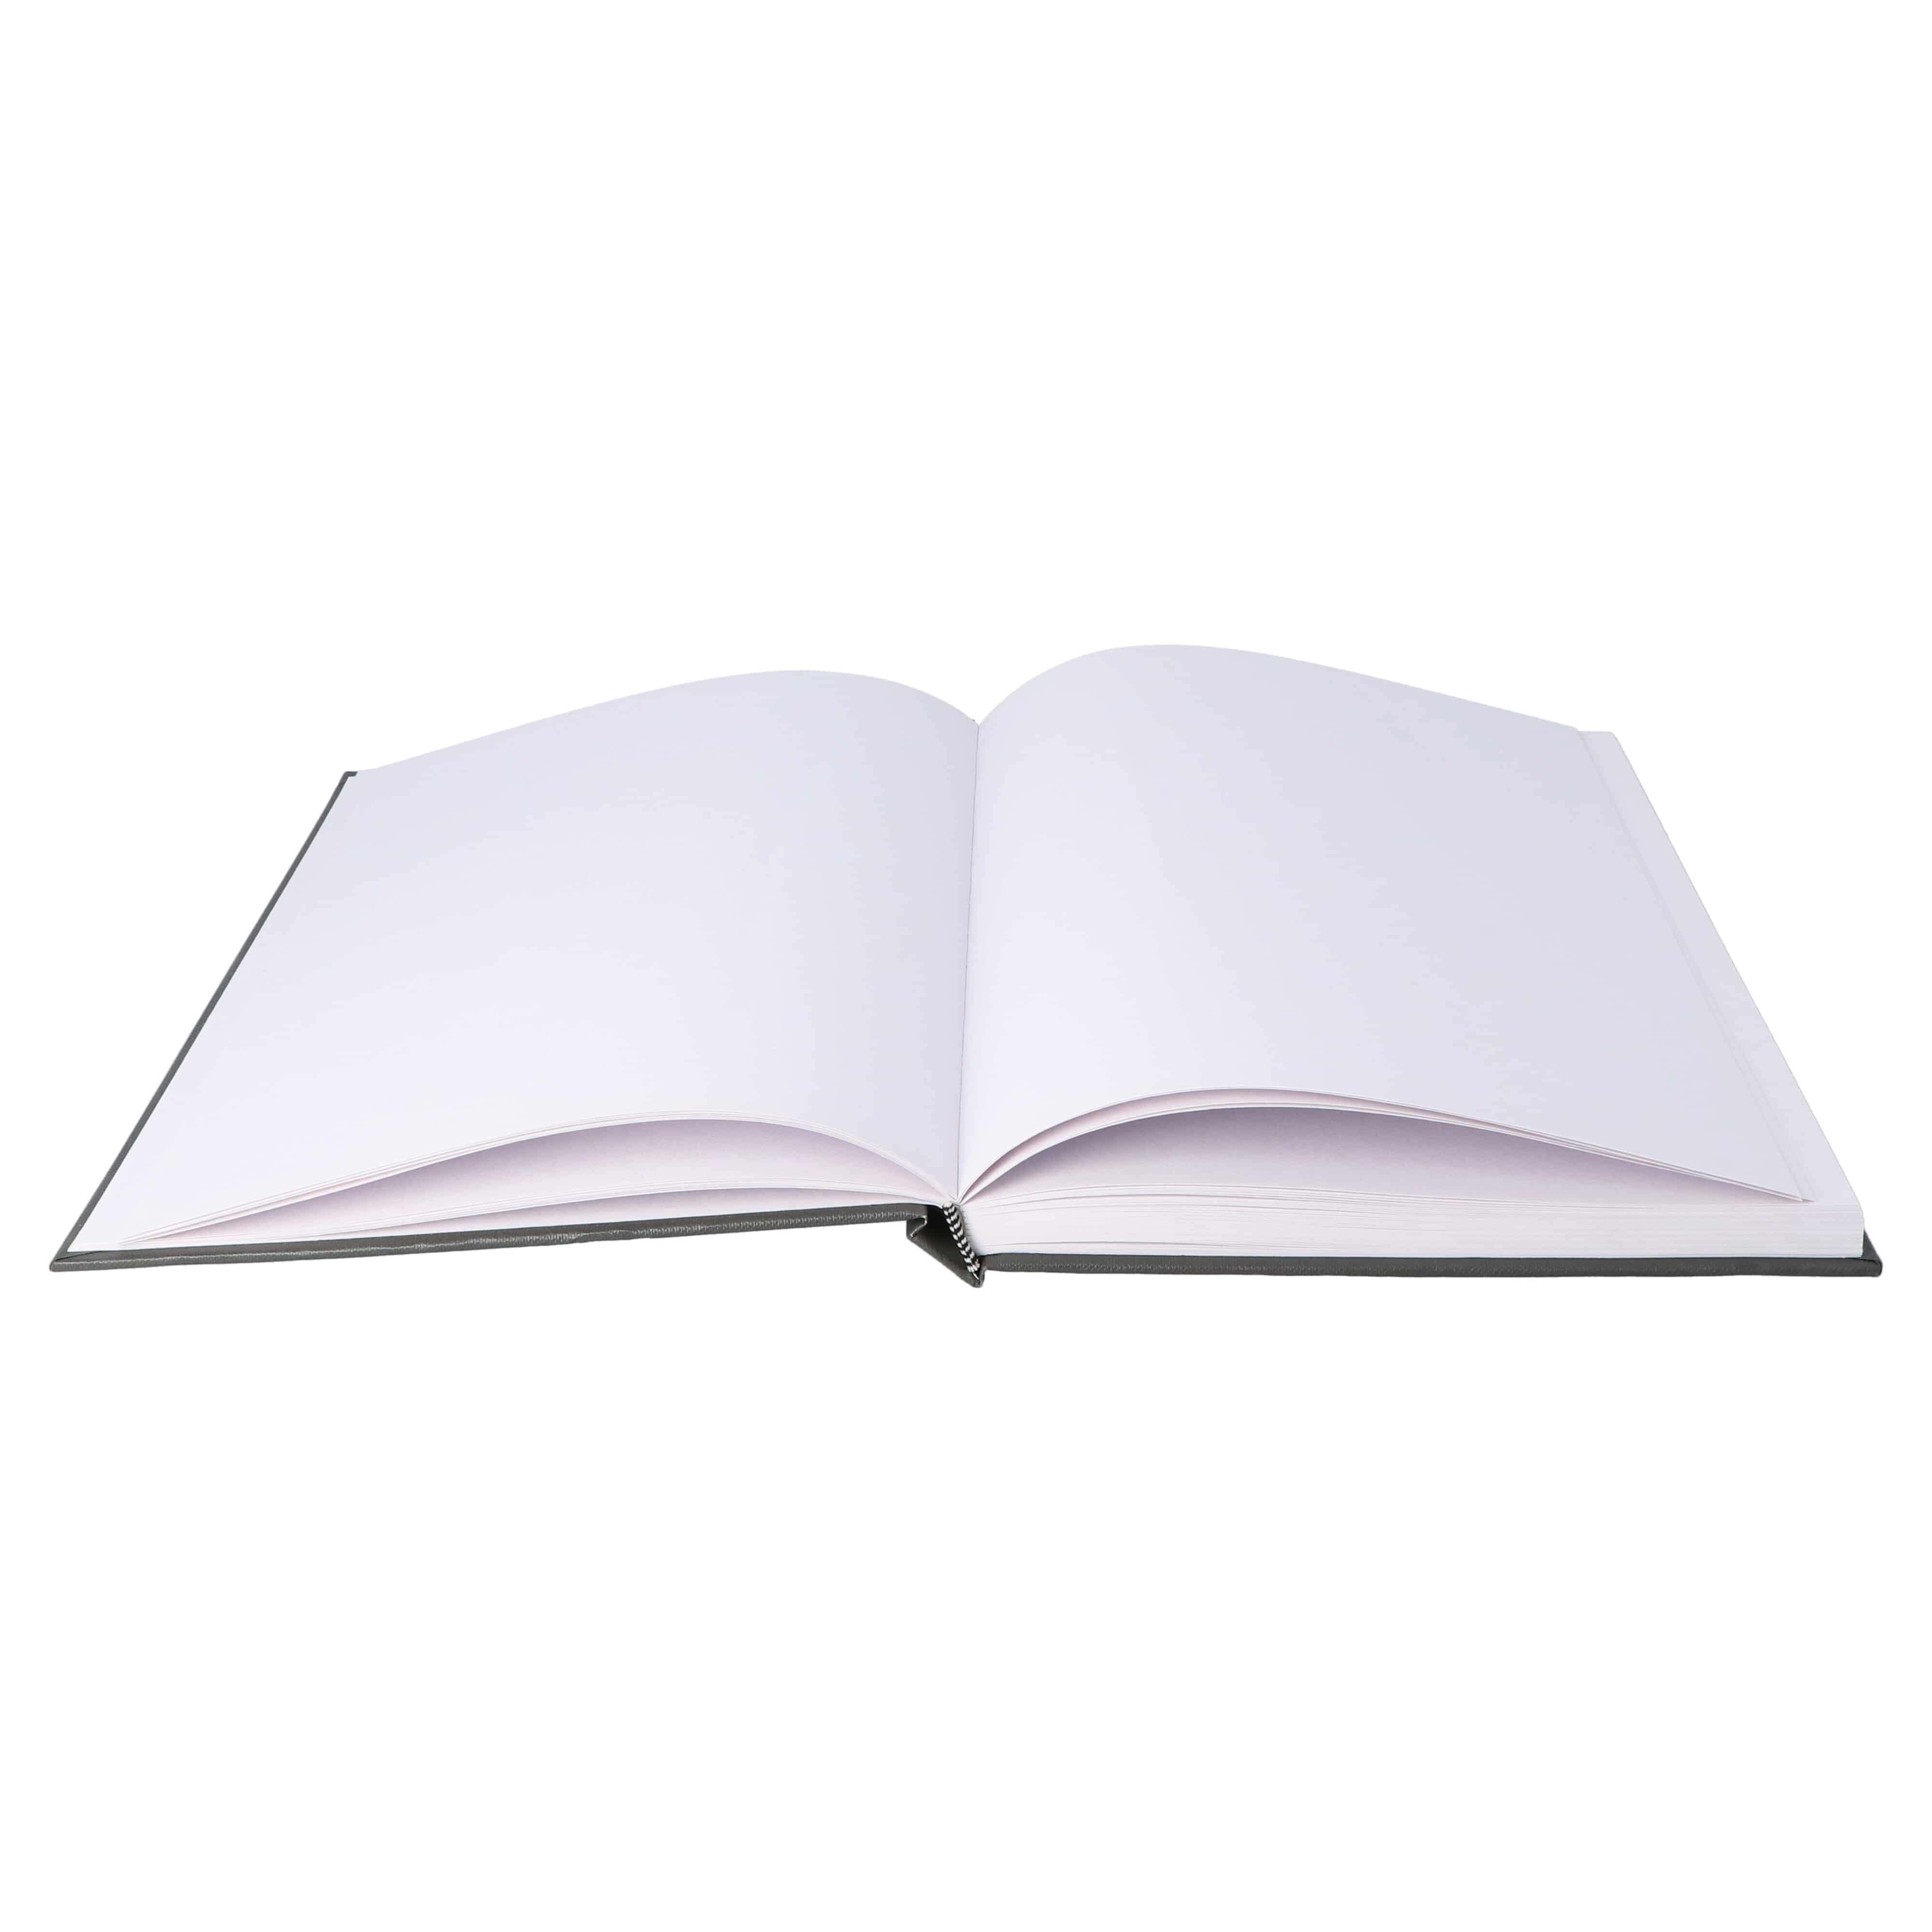 Mont Marte® Hardcover Schetsboek met blanco vellen 110gsm A4